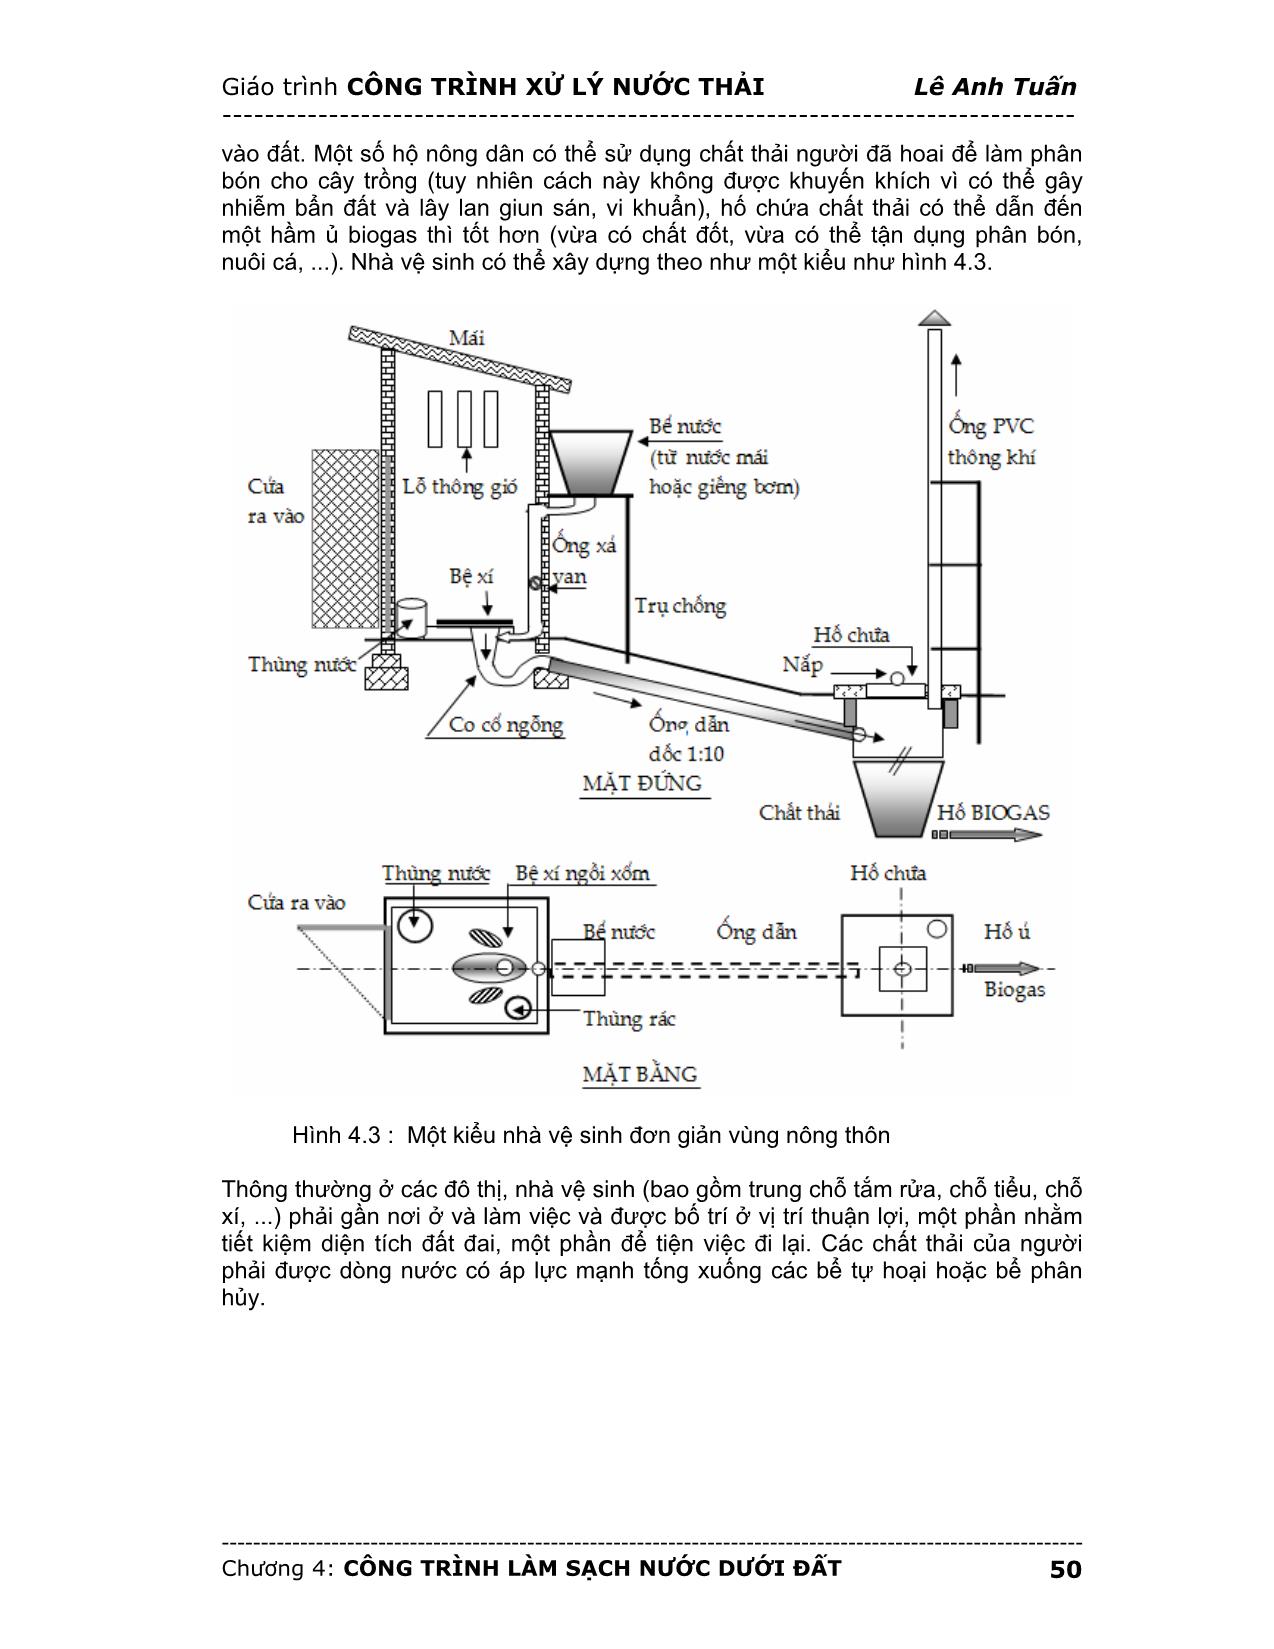 Giáo trình Công trình xử lý nước thải (Phần 2) trang 3